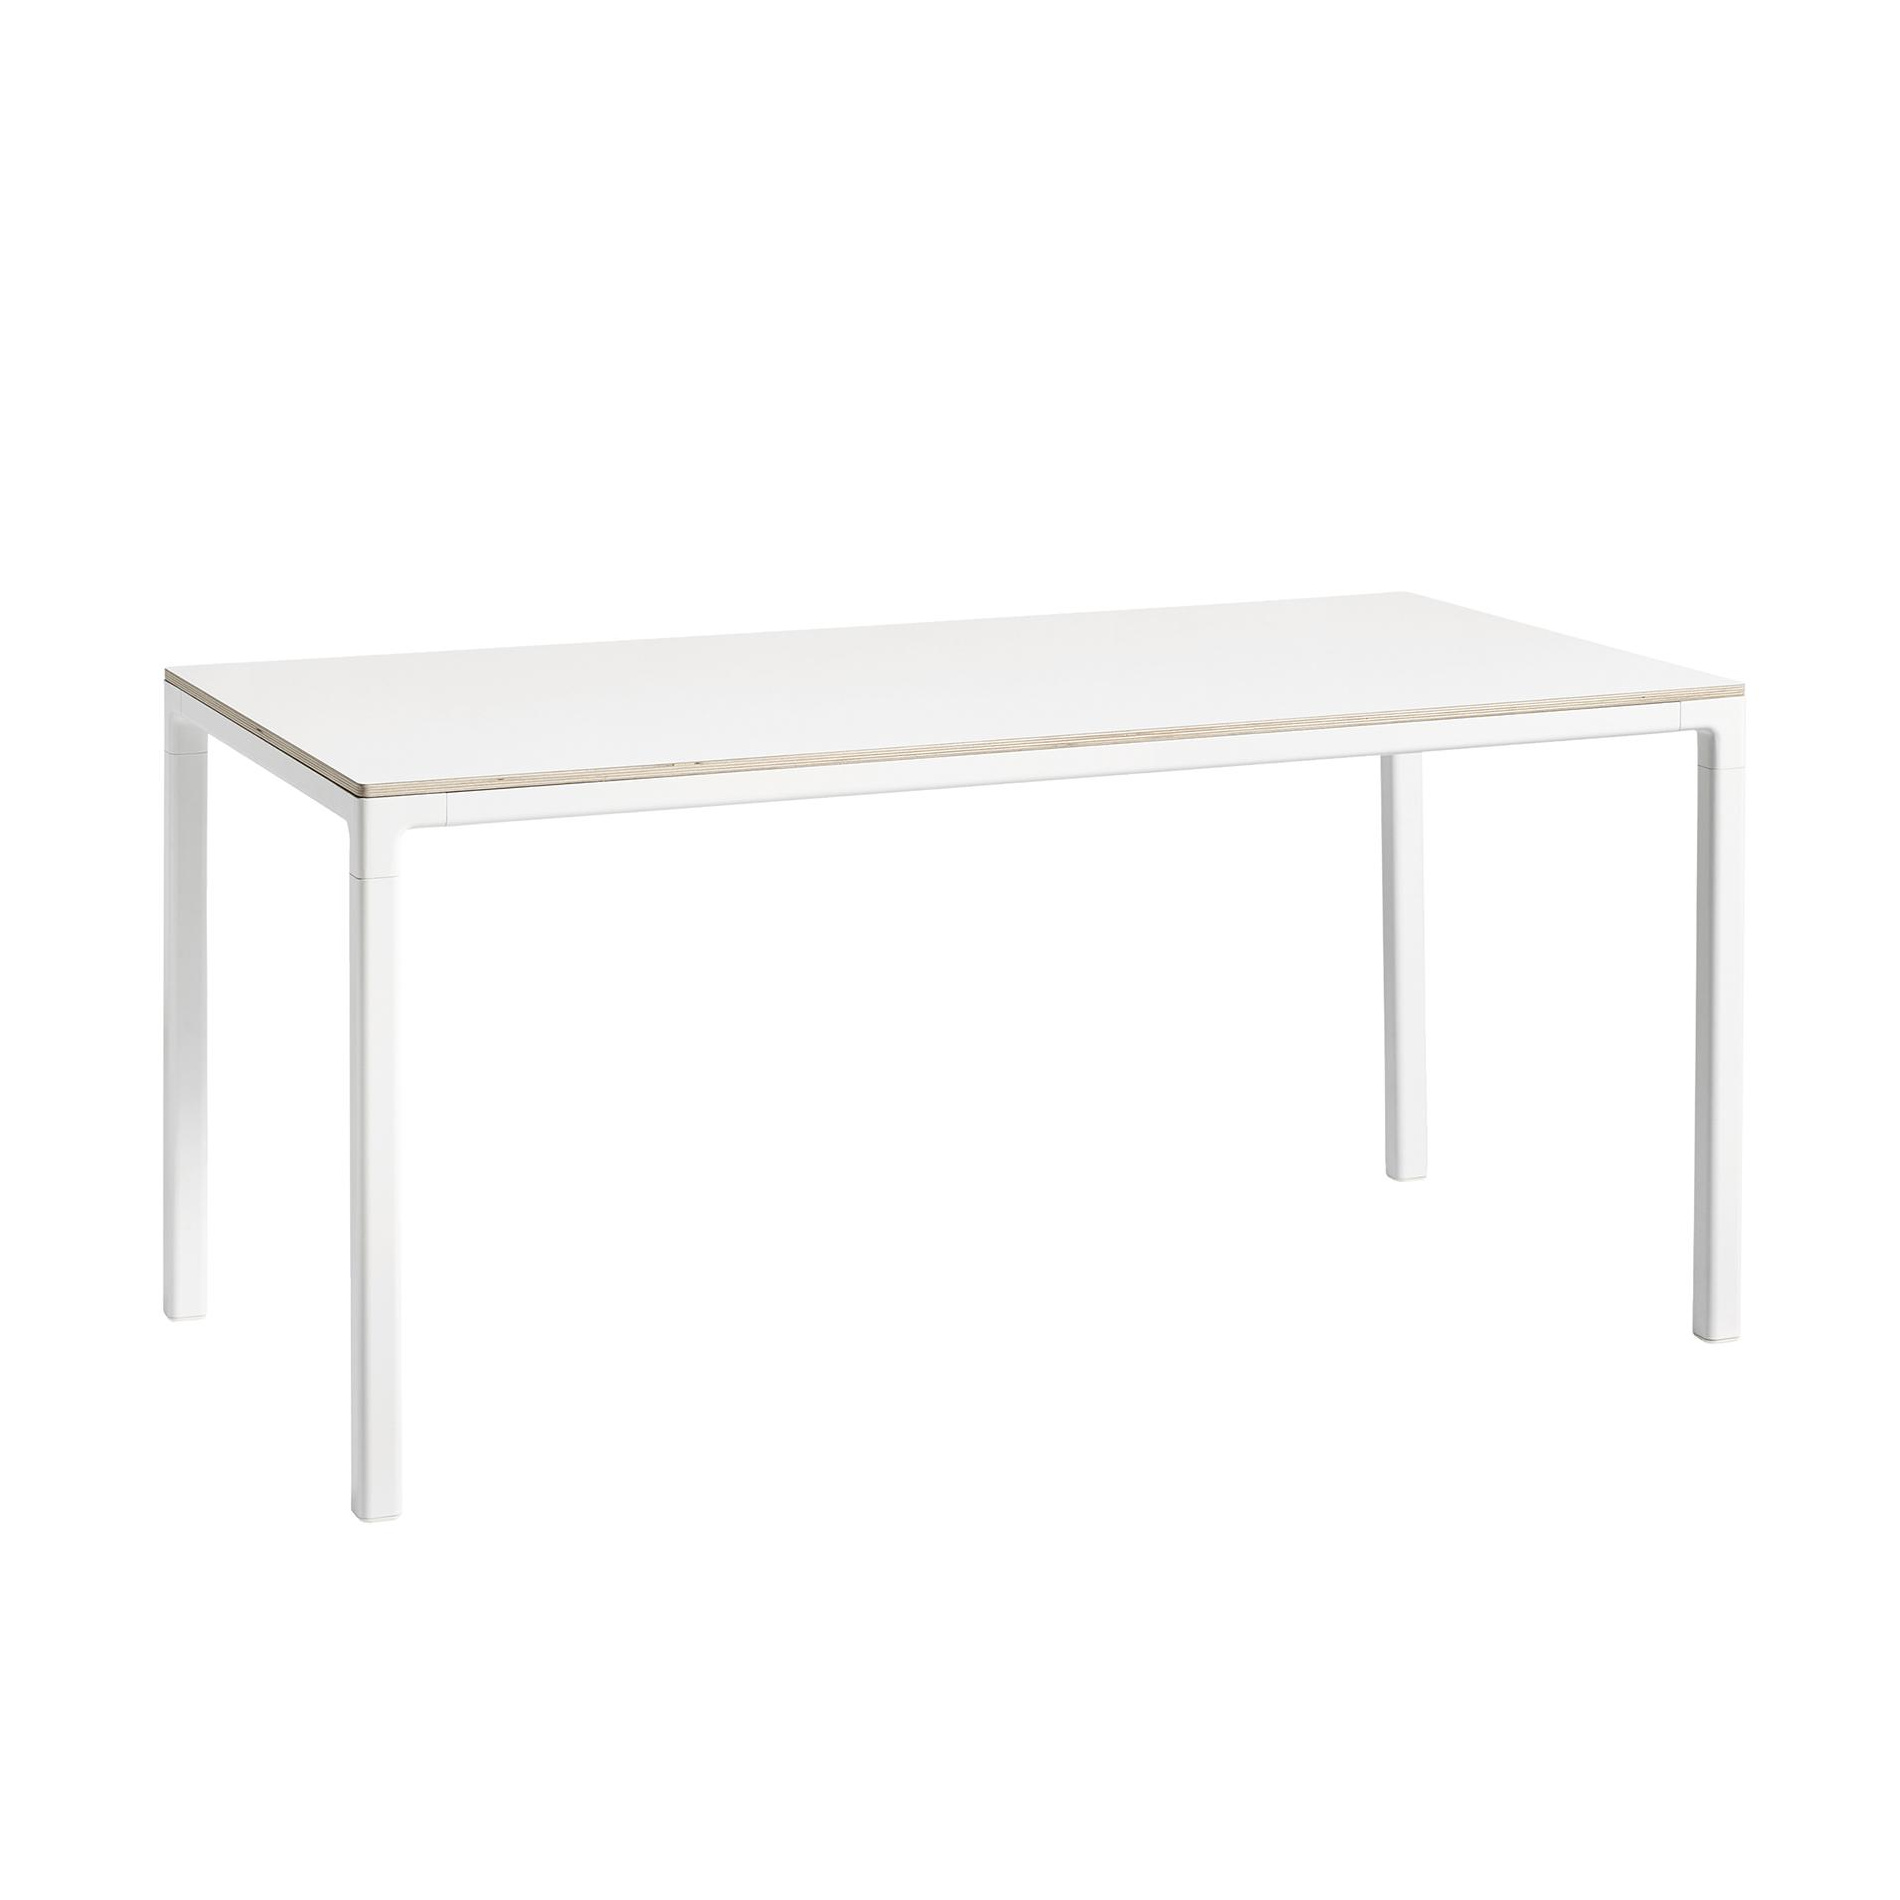 HAY - T12 Tisch Laminat 160x80cm - weiß/Laminat mit Sperrholzkante/Gestell Aluminium weiß pulverbeschichtet/LxBxH 160x80x74cm von HAY